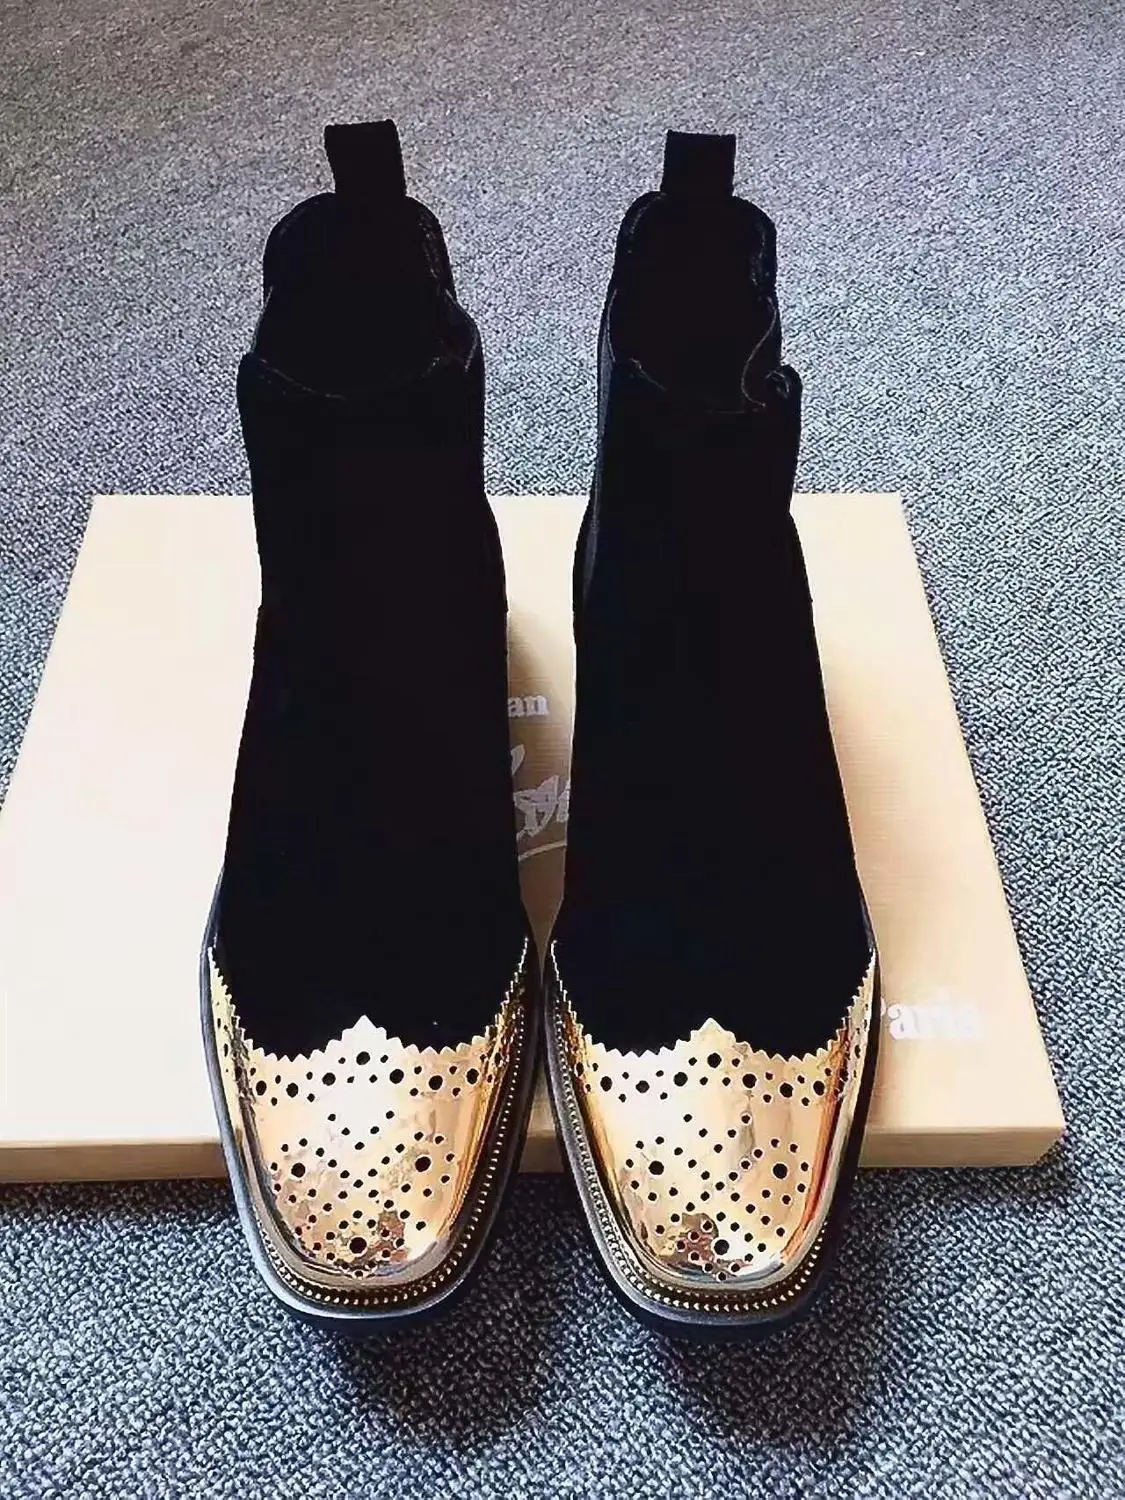 Обувь; женские кожаные полусапожки с металлическим декором и квадратным носком; 2,5 см; красивые ботинки для девочек; популярная уникальная обувь; Chaussures Femmes De Mujur